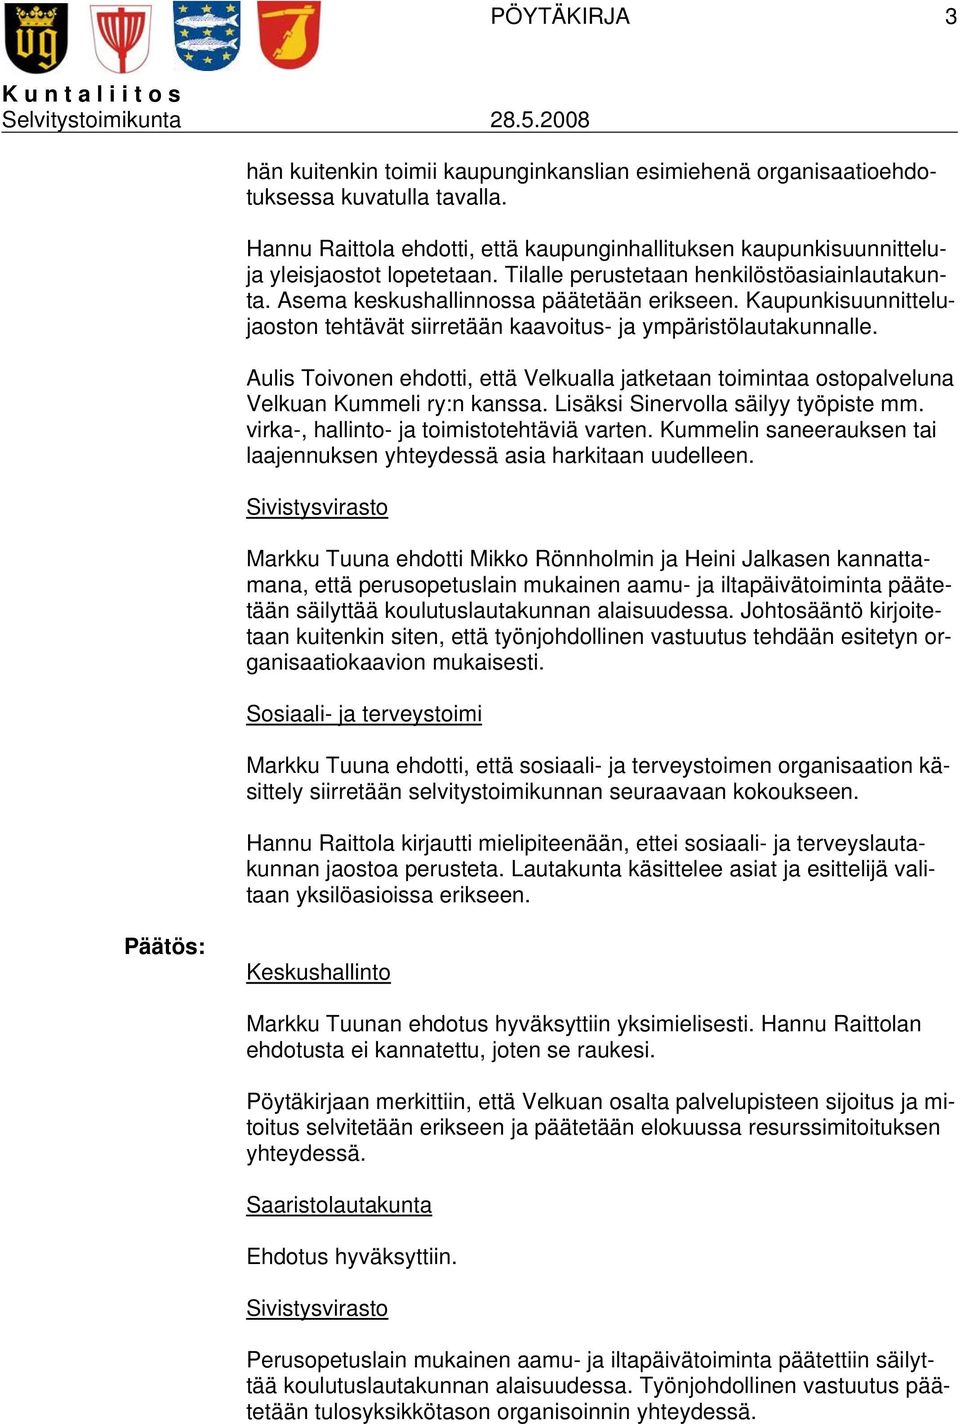 Kaupunkisuunnittelujaoston tehtävät siirretään kaavoitus- ja ympäristölautakunnalle. Aulis Toivonen ehdotti, että Velkualla jatketaan toimintaa ostopalveluna Velkuan Kummeli ry:n kanssa.